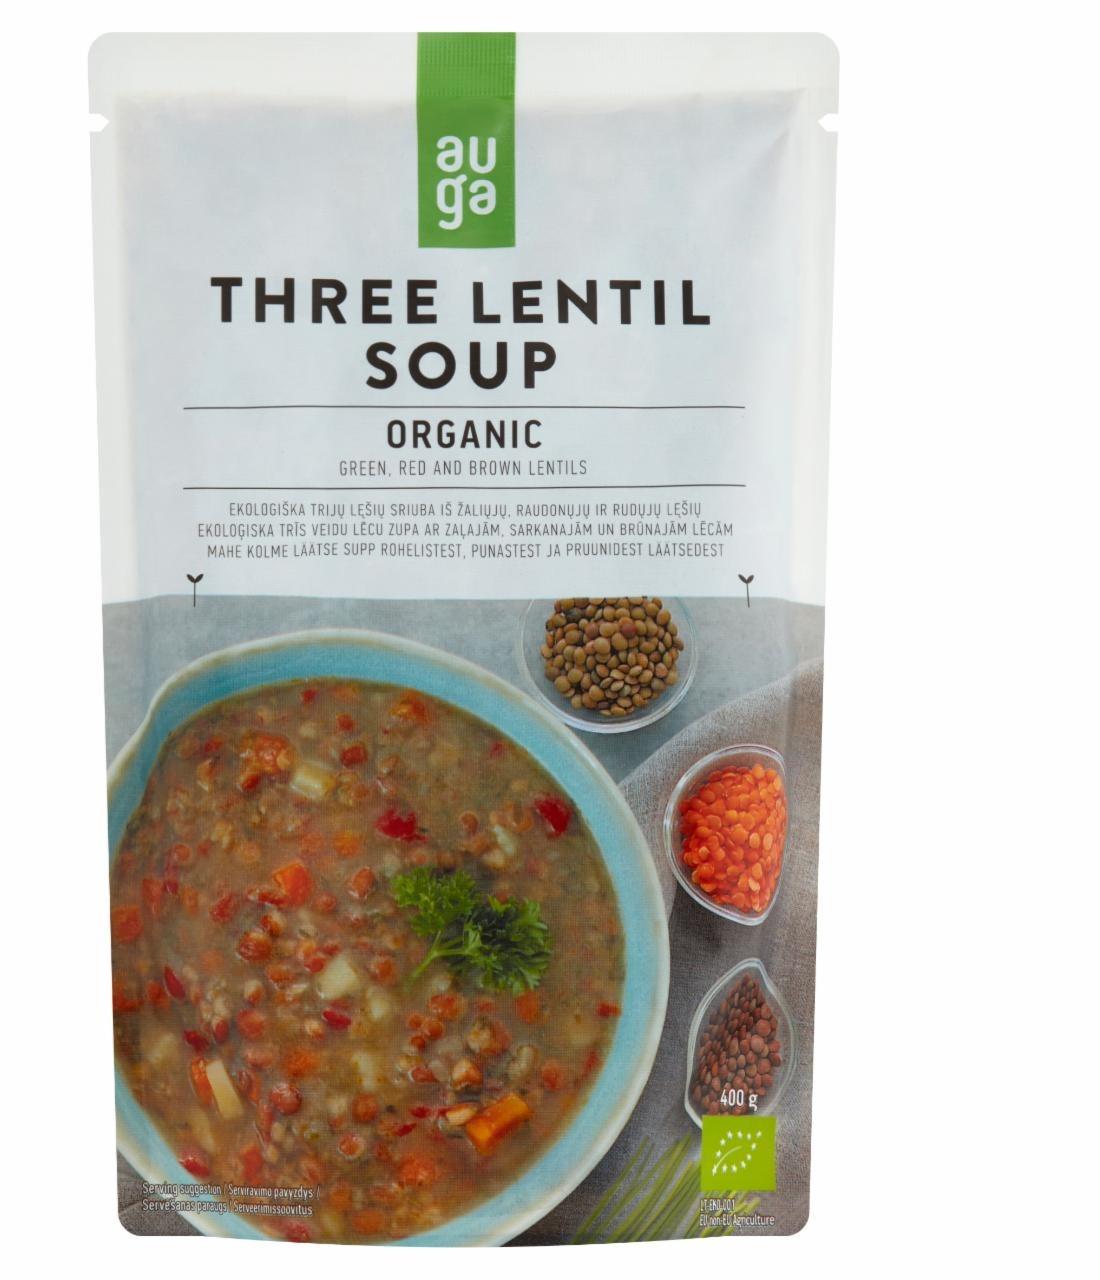 Fotografie - Organic Three Lentil Soup Auga